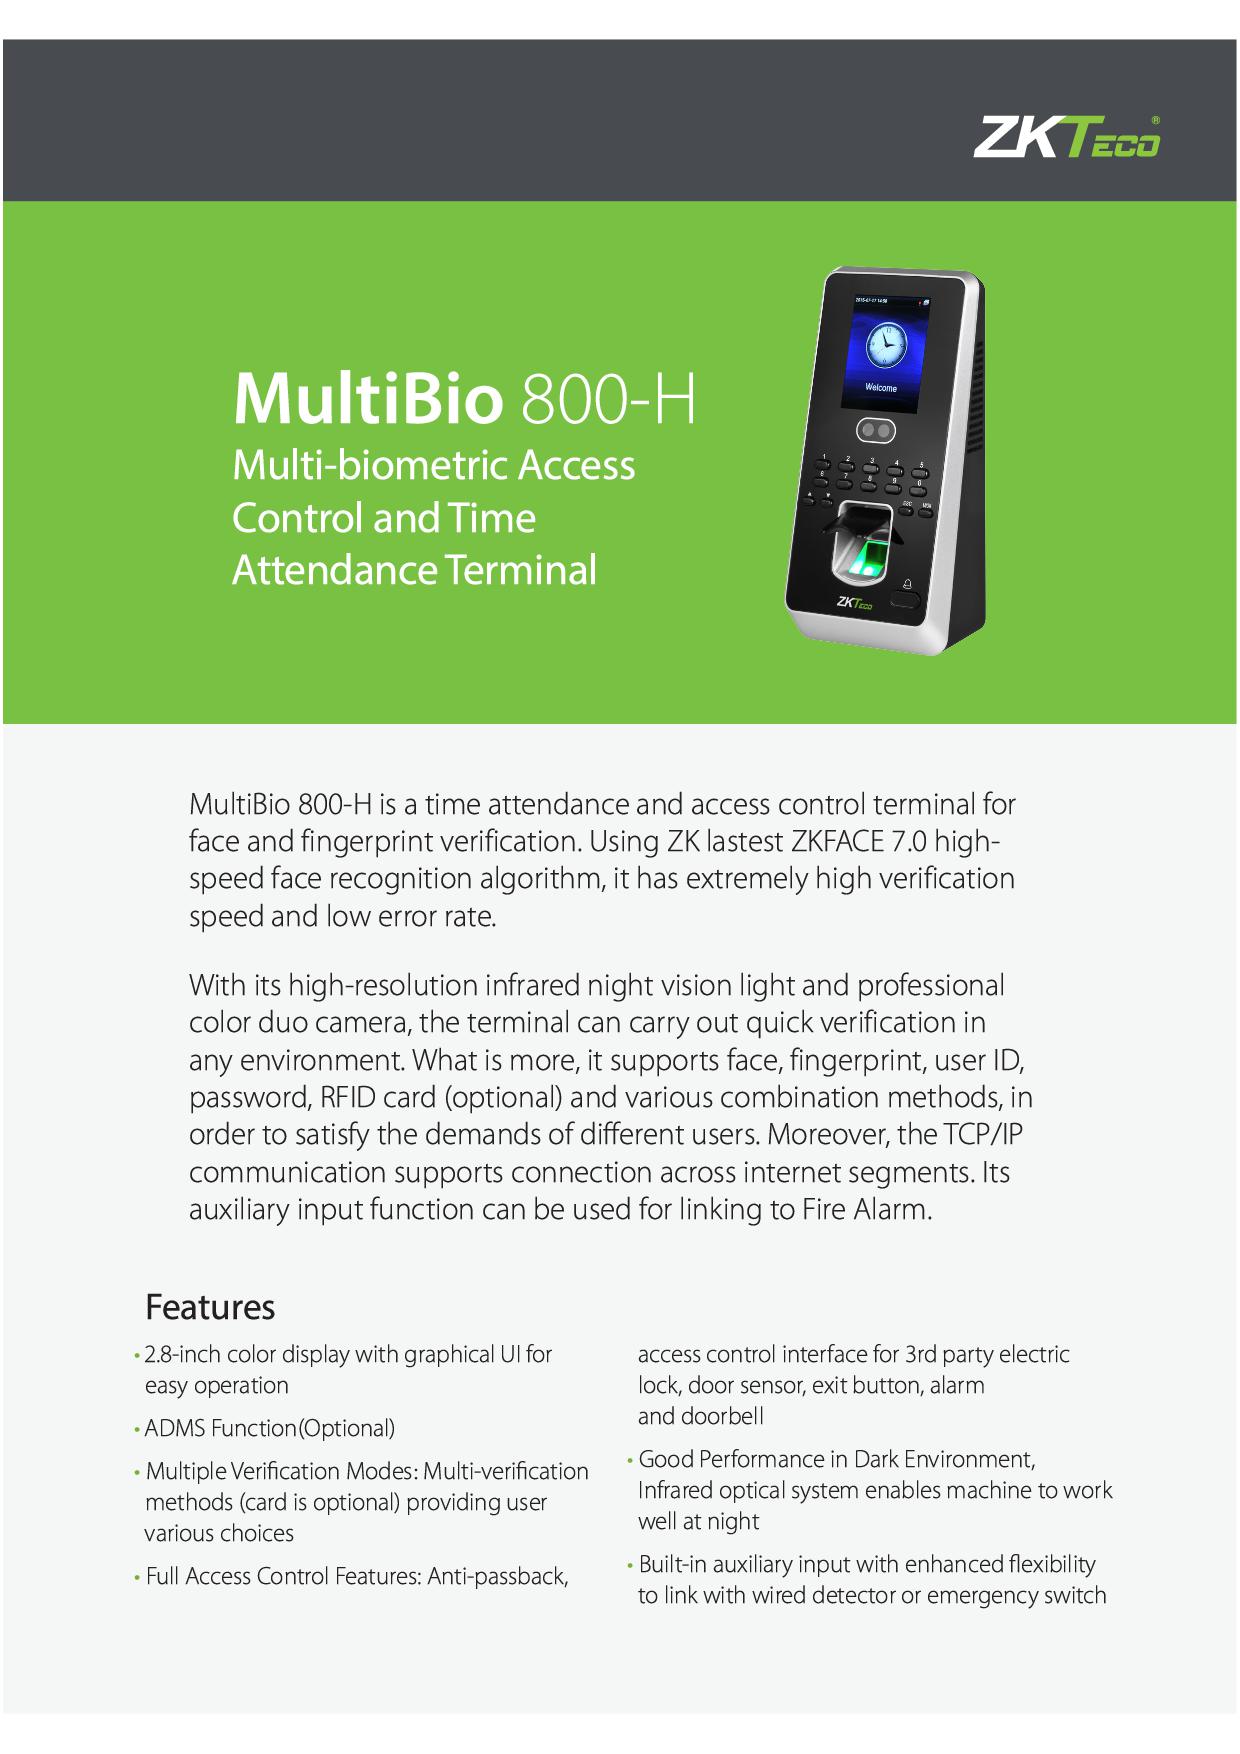 MultiBio 800-H